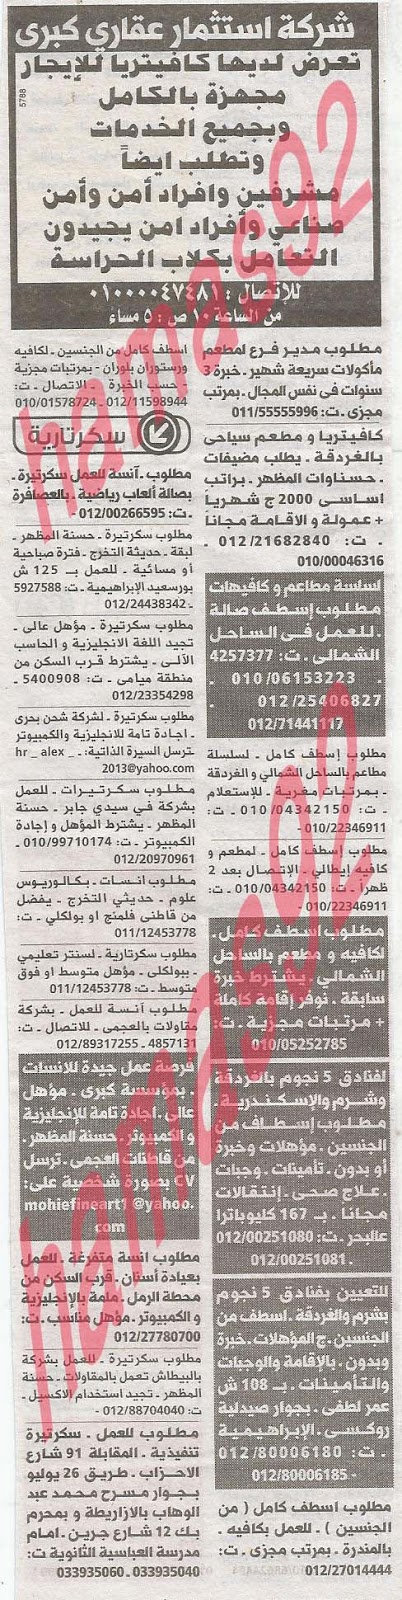 وظائف خالية فى جريدة الوسيط الاسكندرية السبت 08-06-2013 %D9%88+%D8%B3+%D8%B3+3